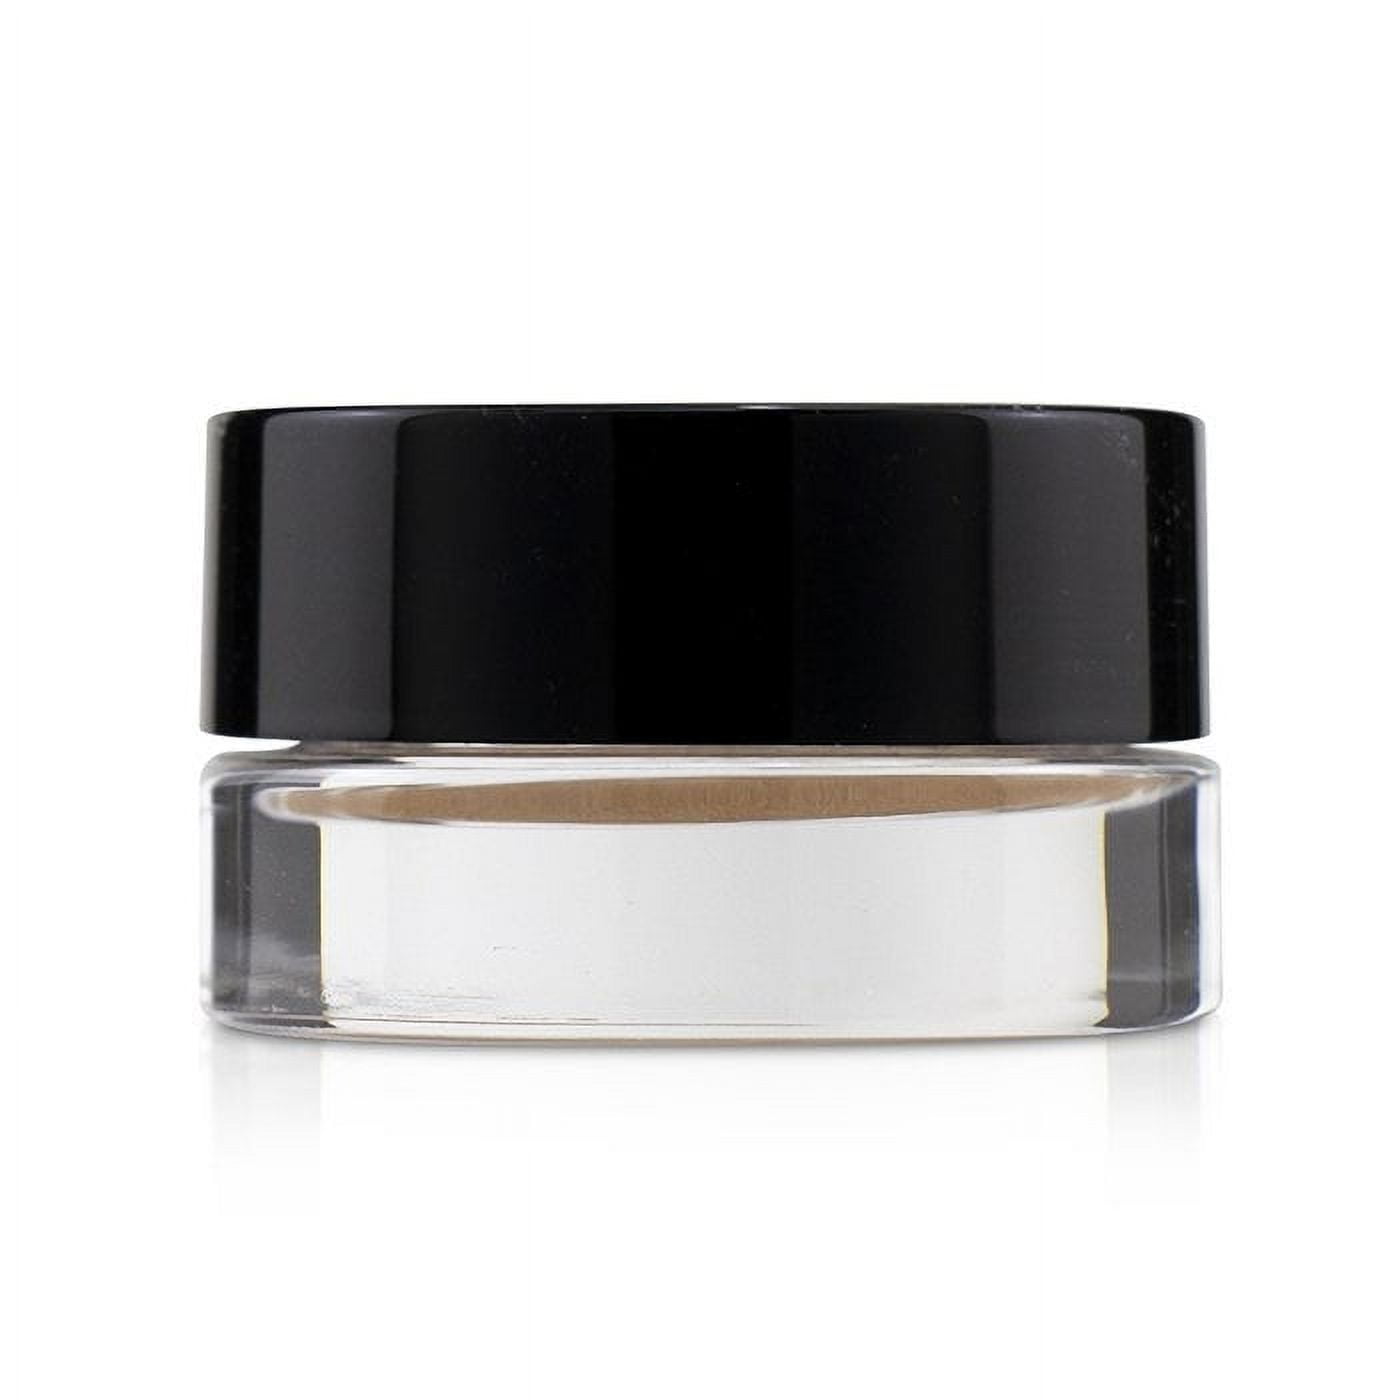 Chanel Ombre Premiere Longwear Cream Eyeshadow - # 802 Undertone